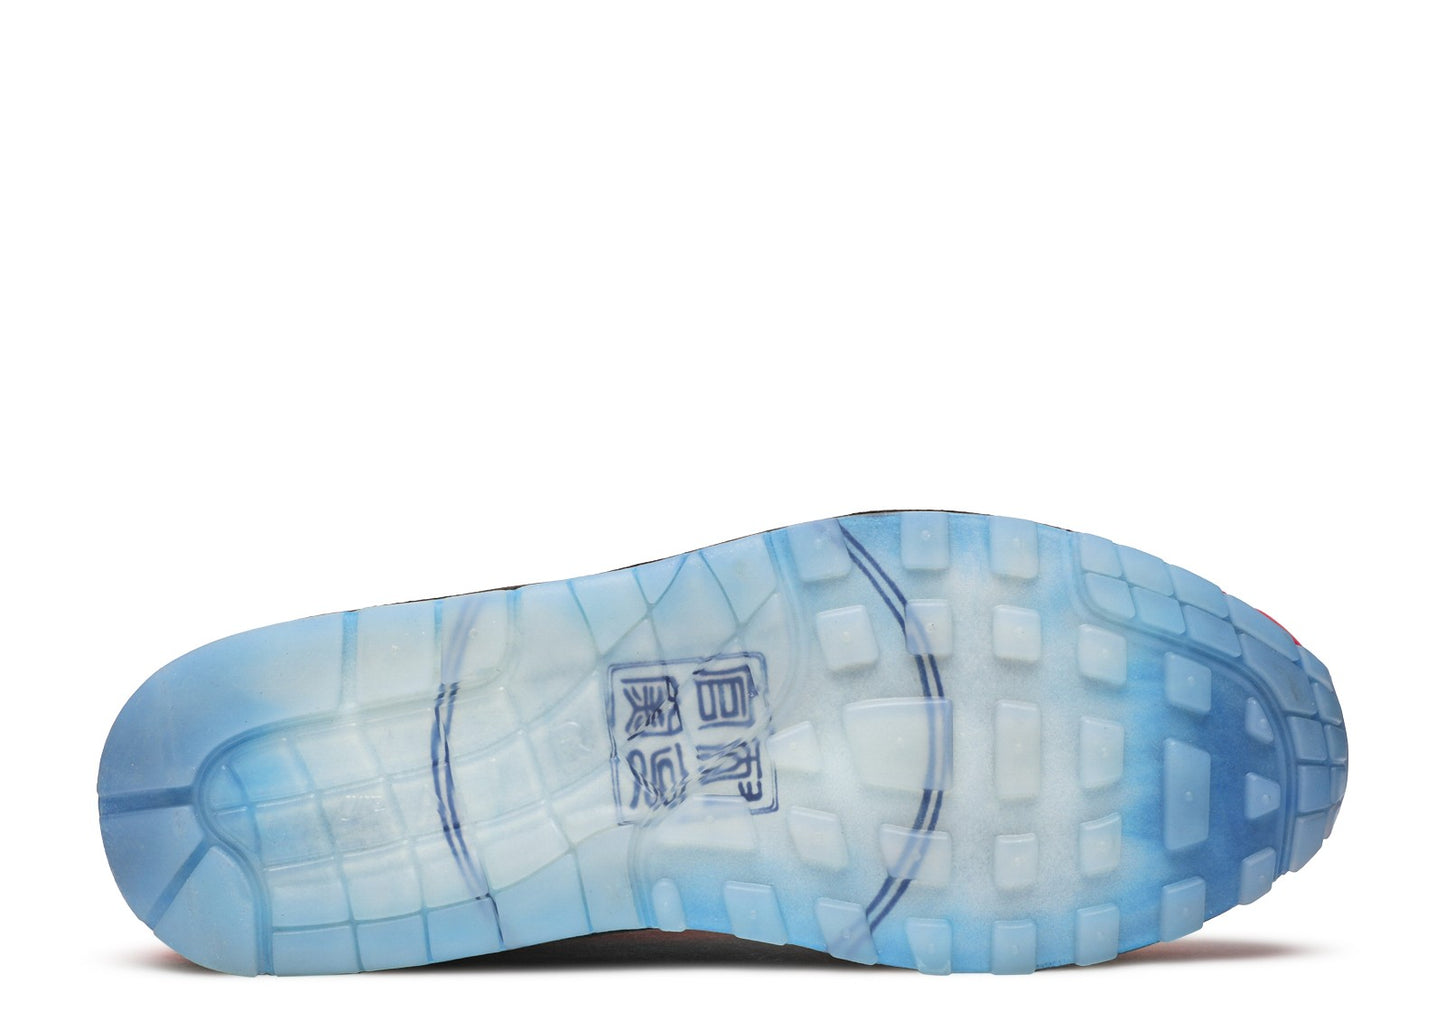 Nike Air Max 1 Premium "Chinese New Year/Longevity"